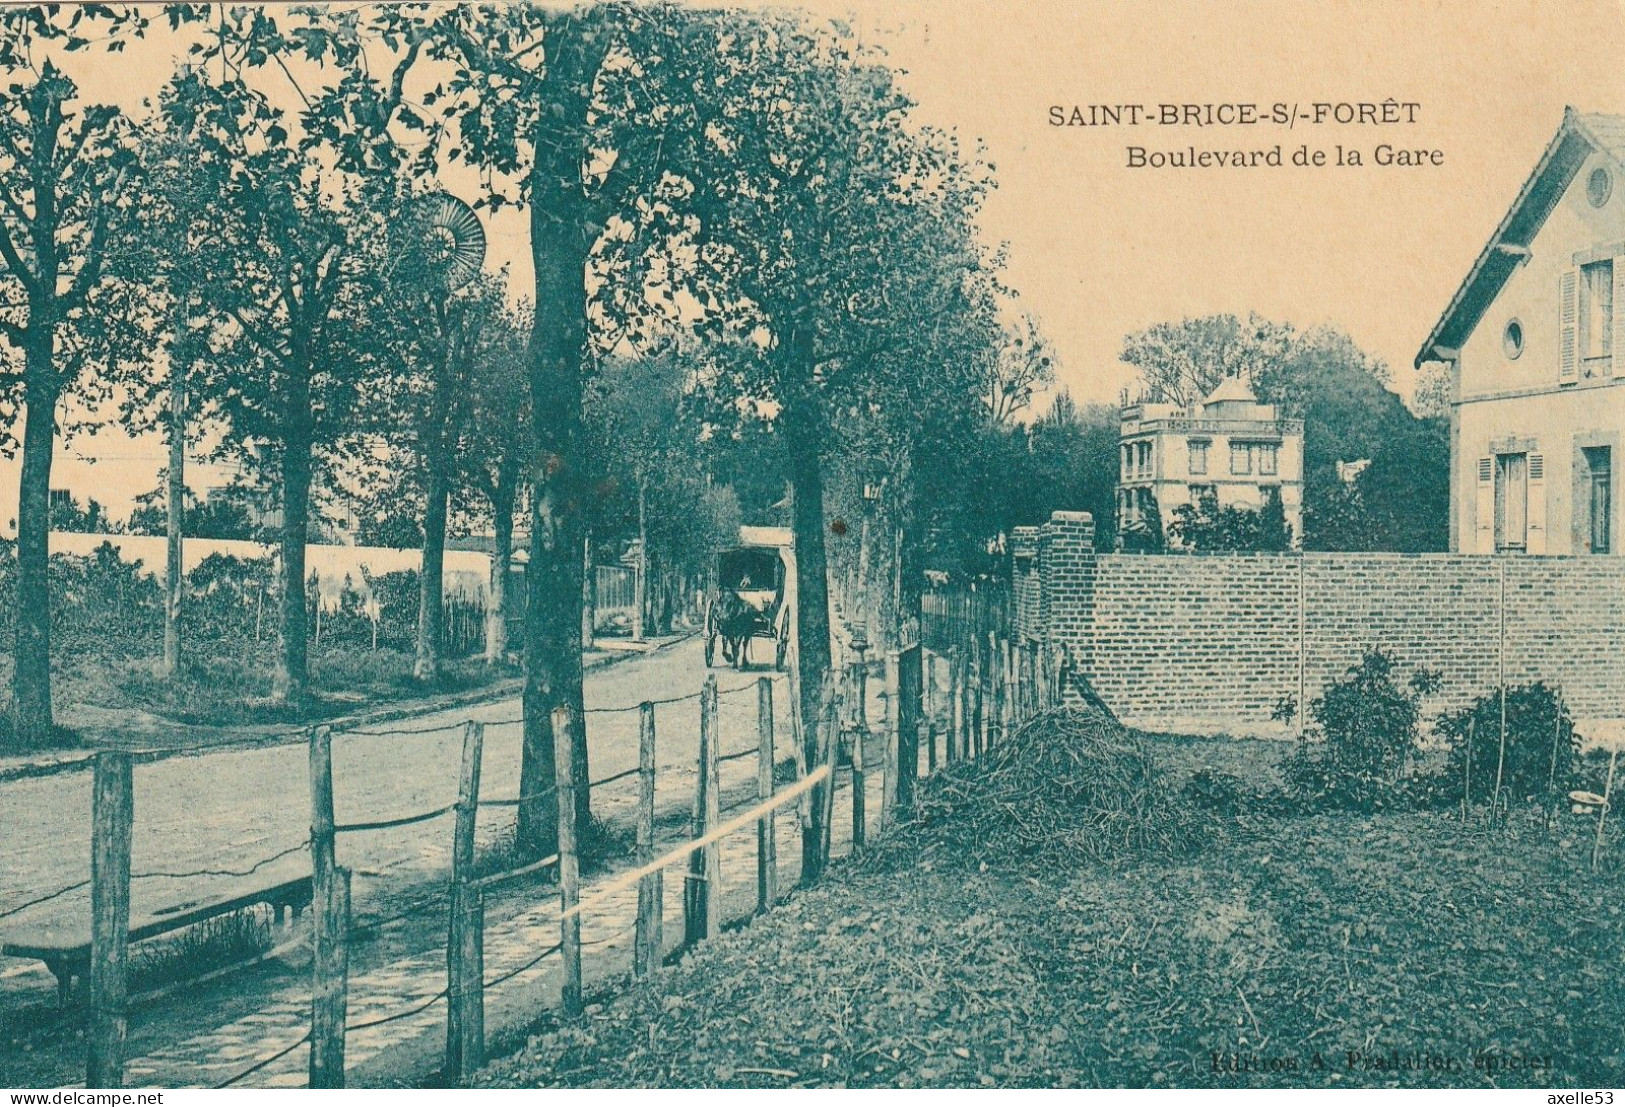 Saint-Brice-S/-Foret 95 (9659) Boulevard De La Gare, Carte Glacée - Saint-Brice-sous-Forêt